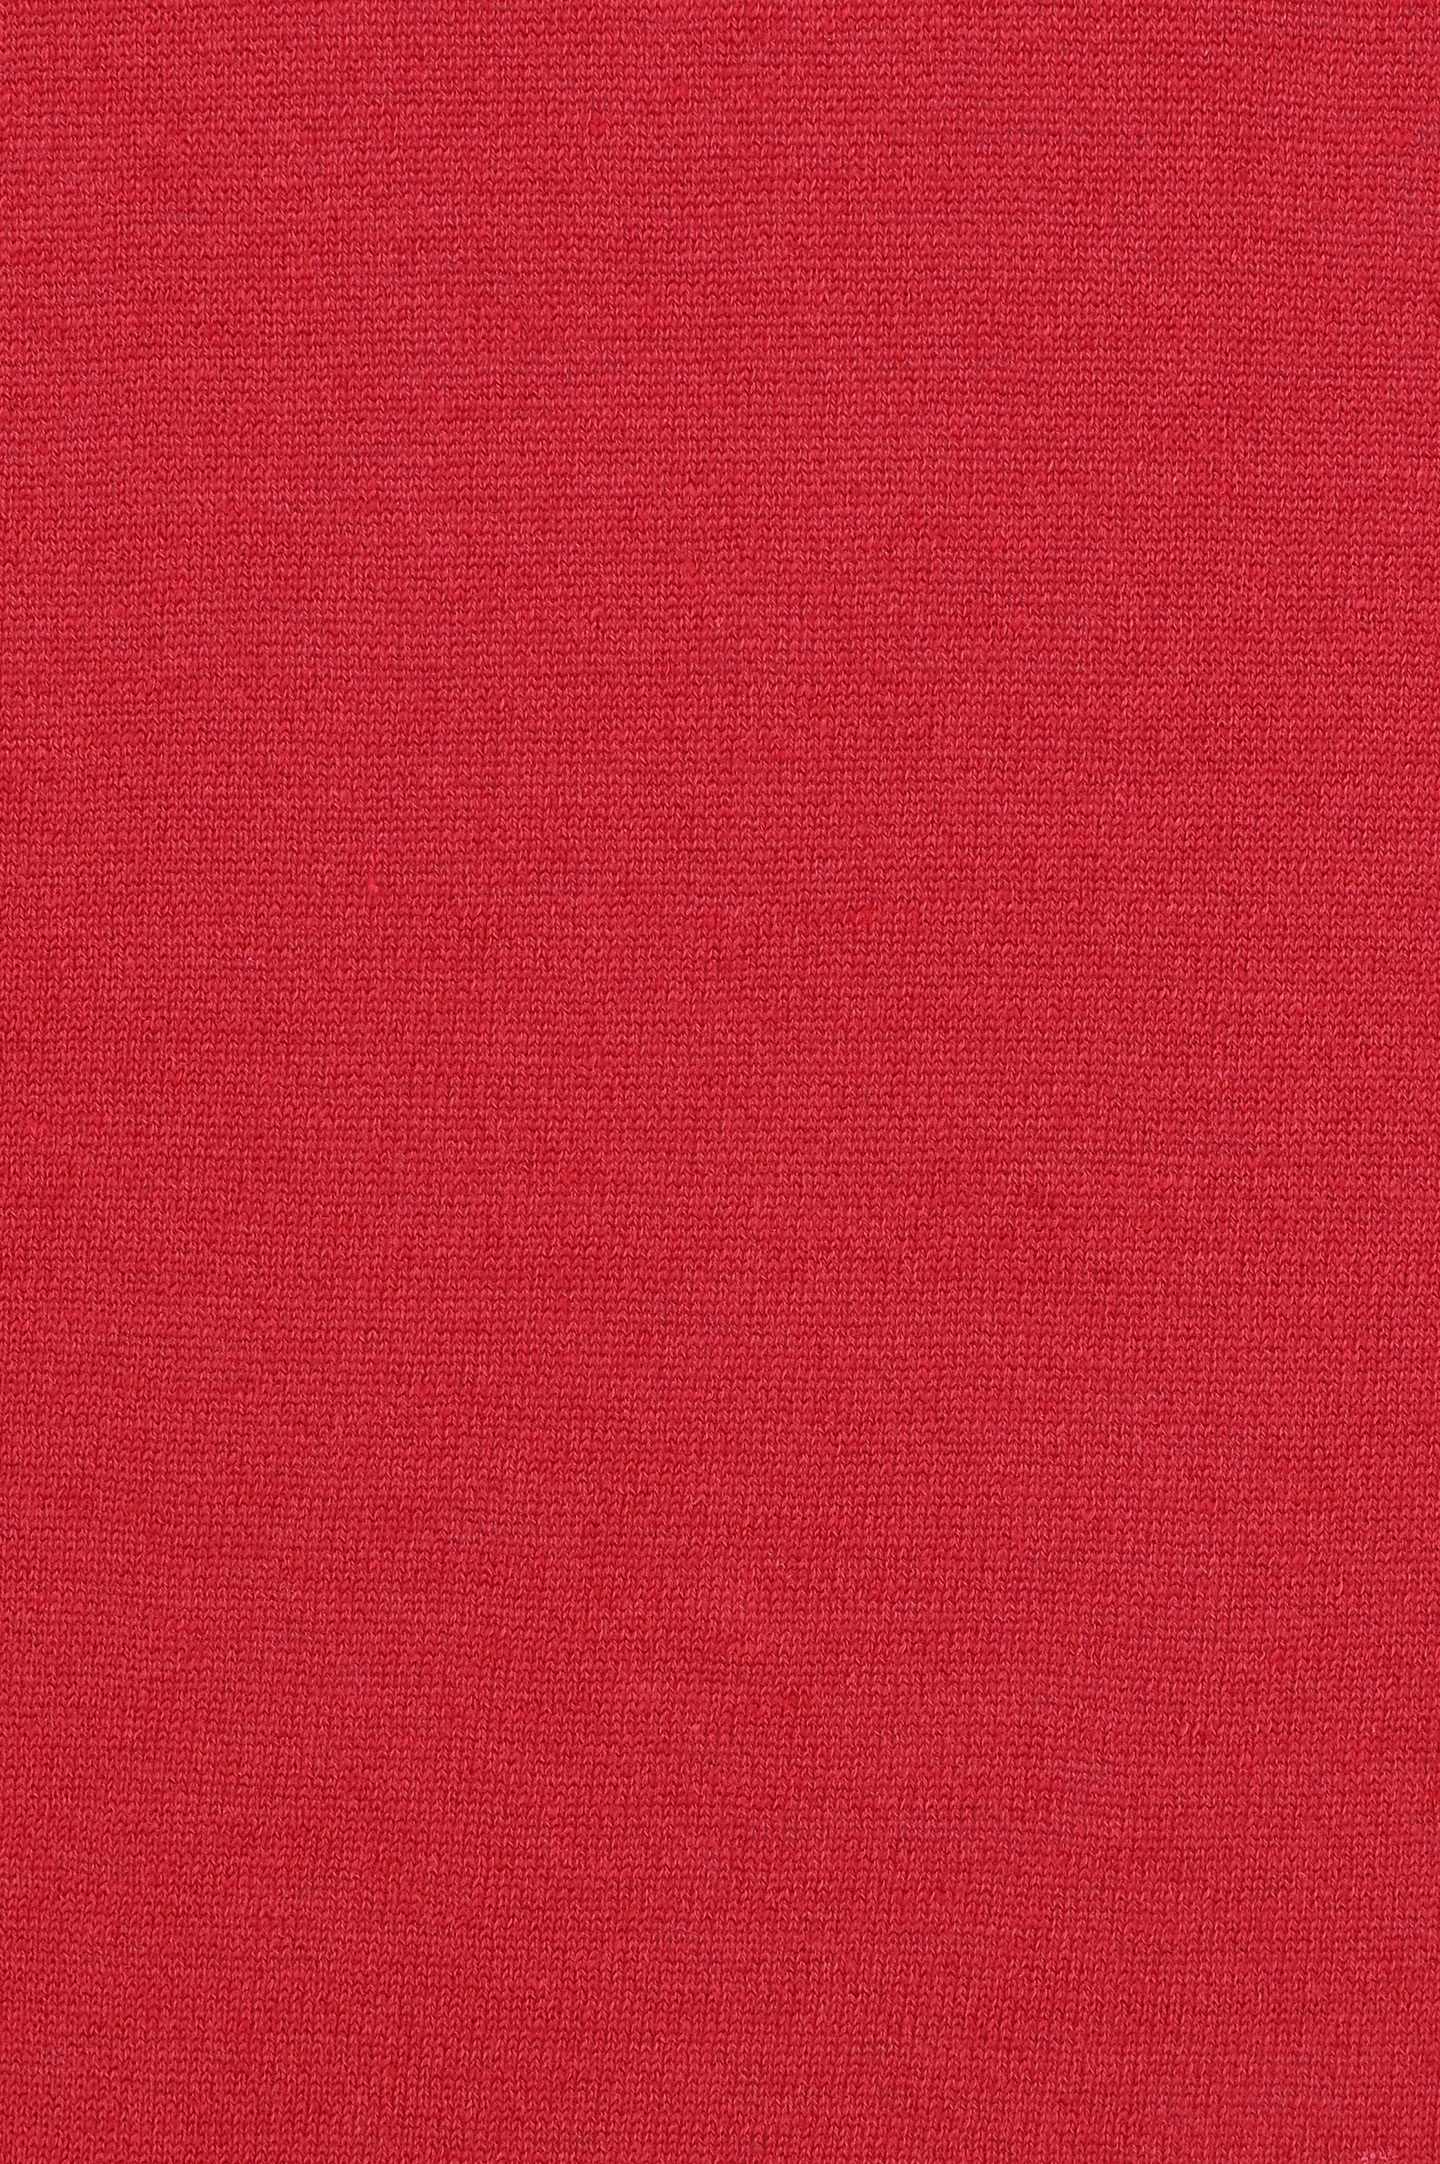 Джемпер BRUNELLO  CUCINELLI M2L00600, цвет: Красный, Мужской